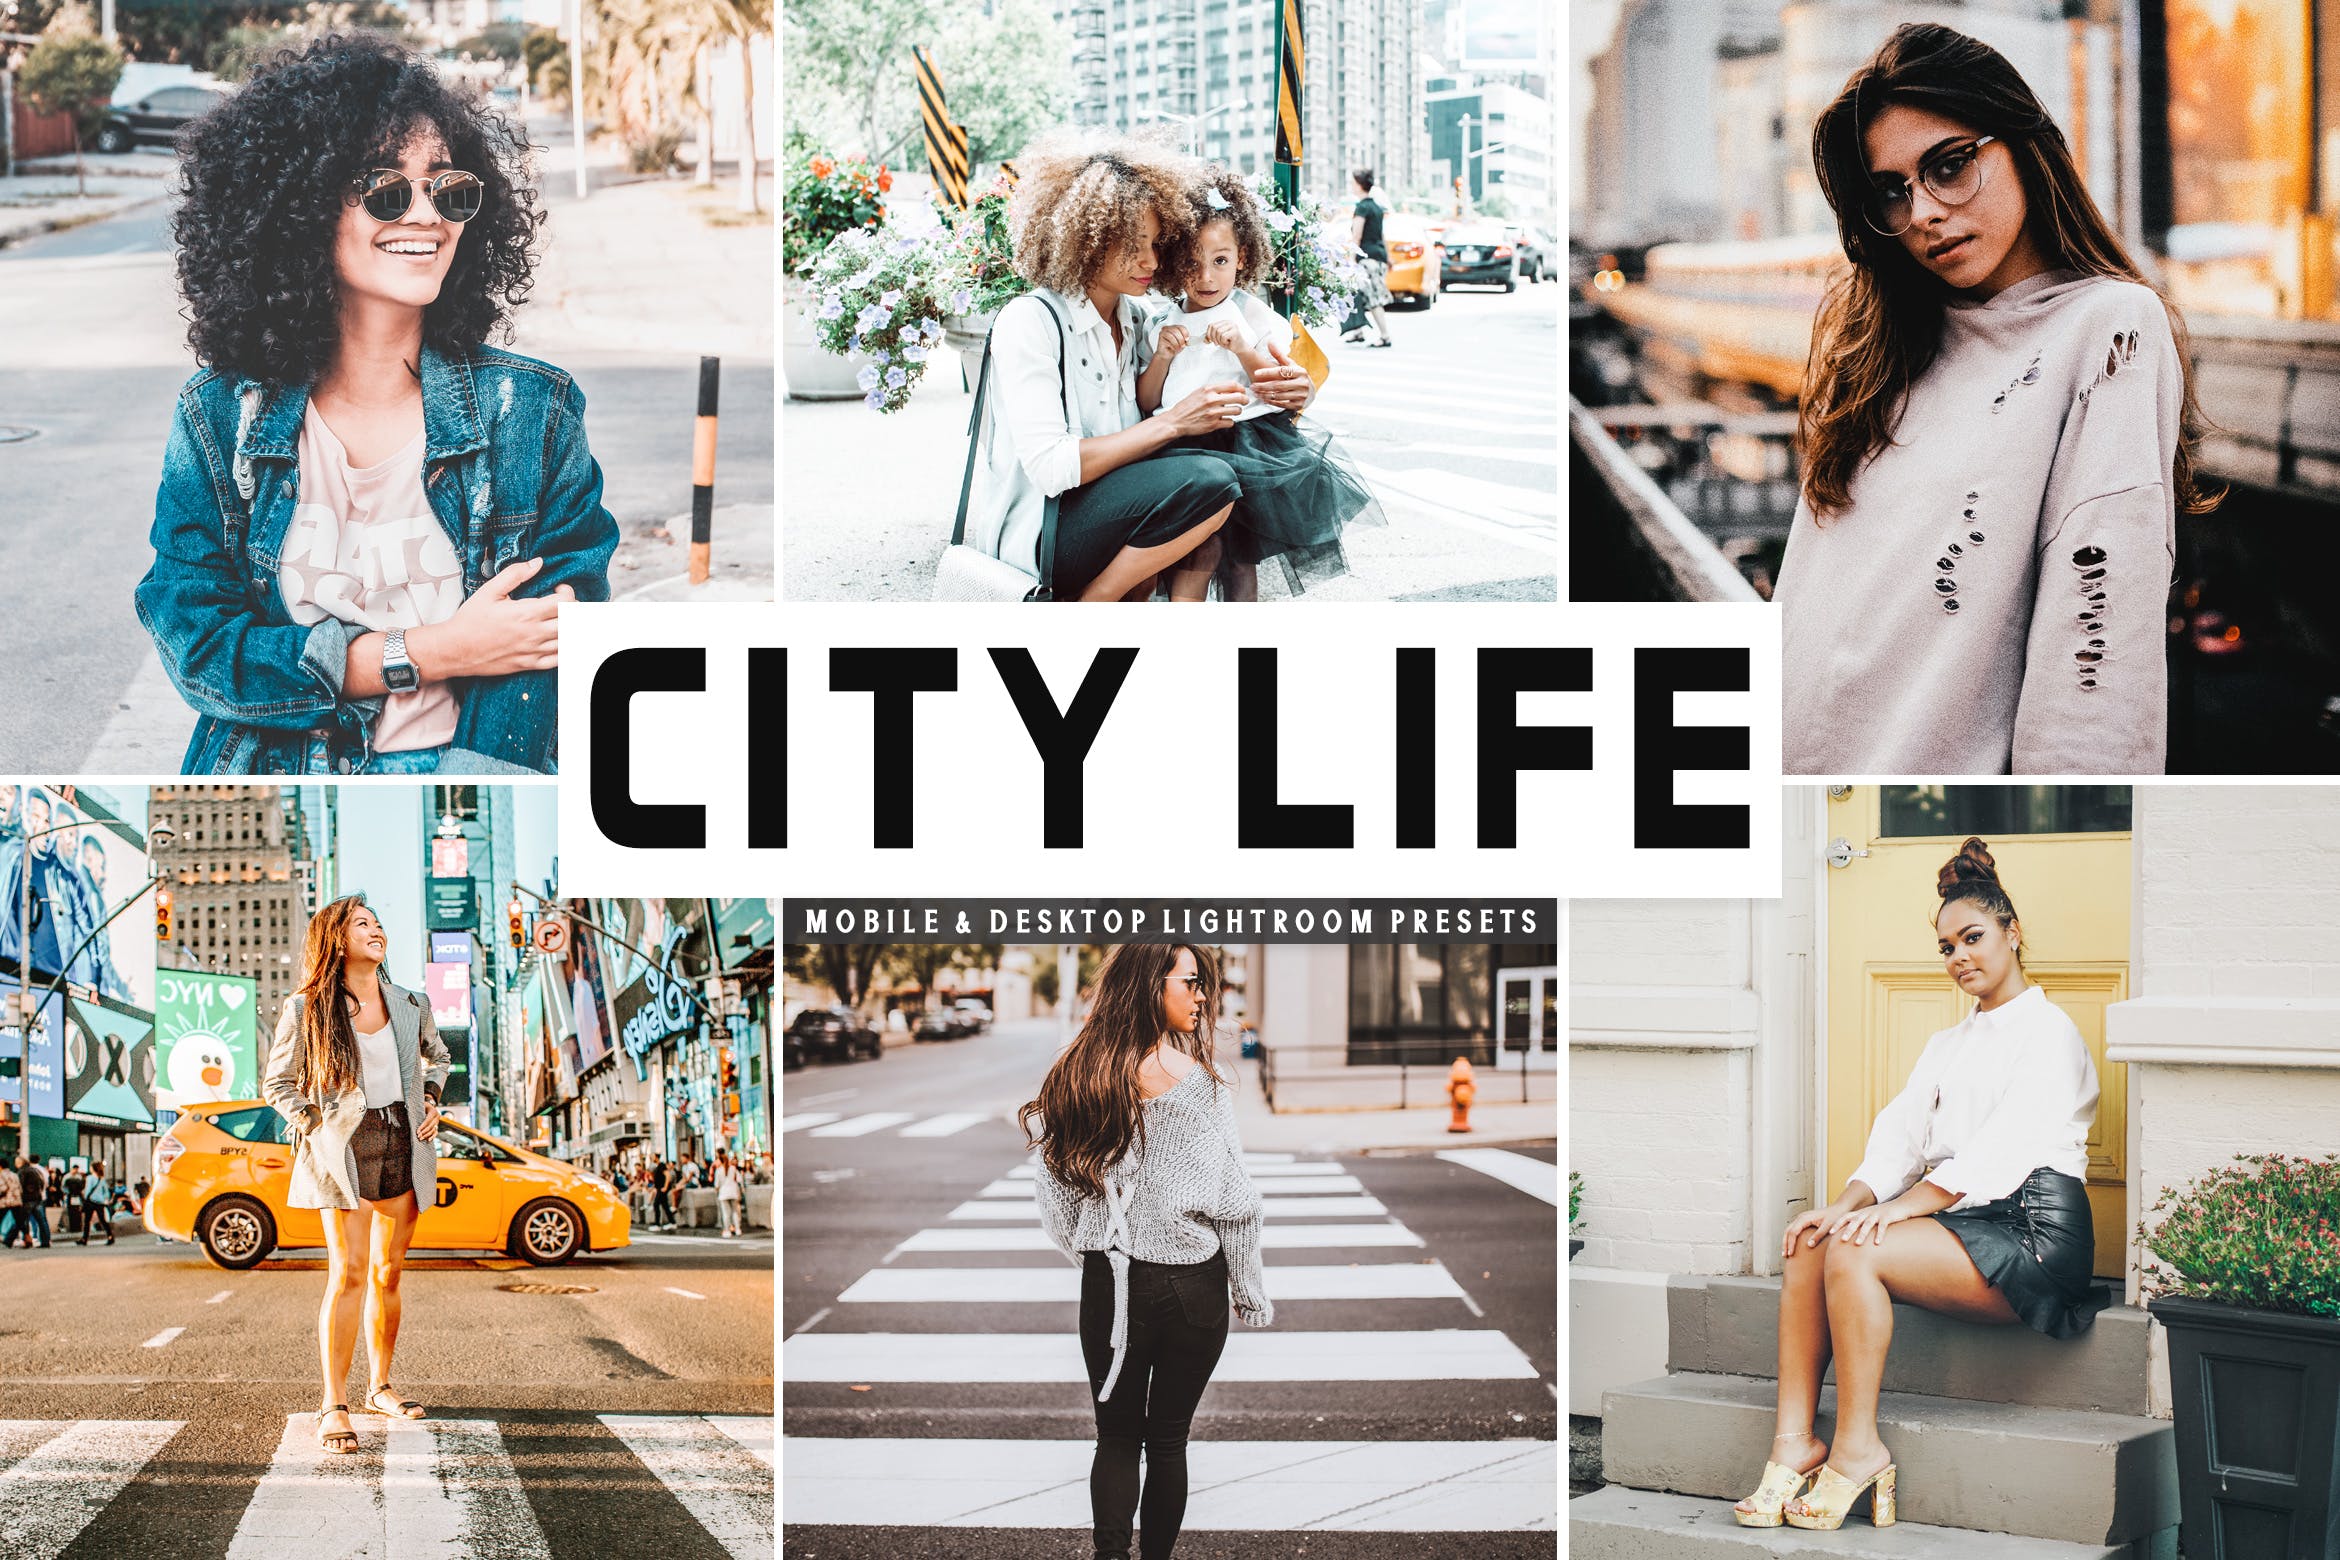 城市生活照片必备调色滤镜第一素材精选LR预设 City Life Mobile & Desktop Lightroom Presets插图